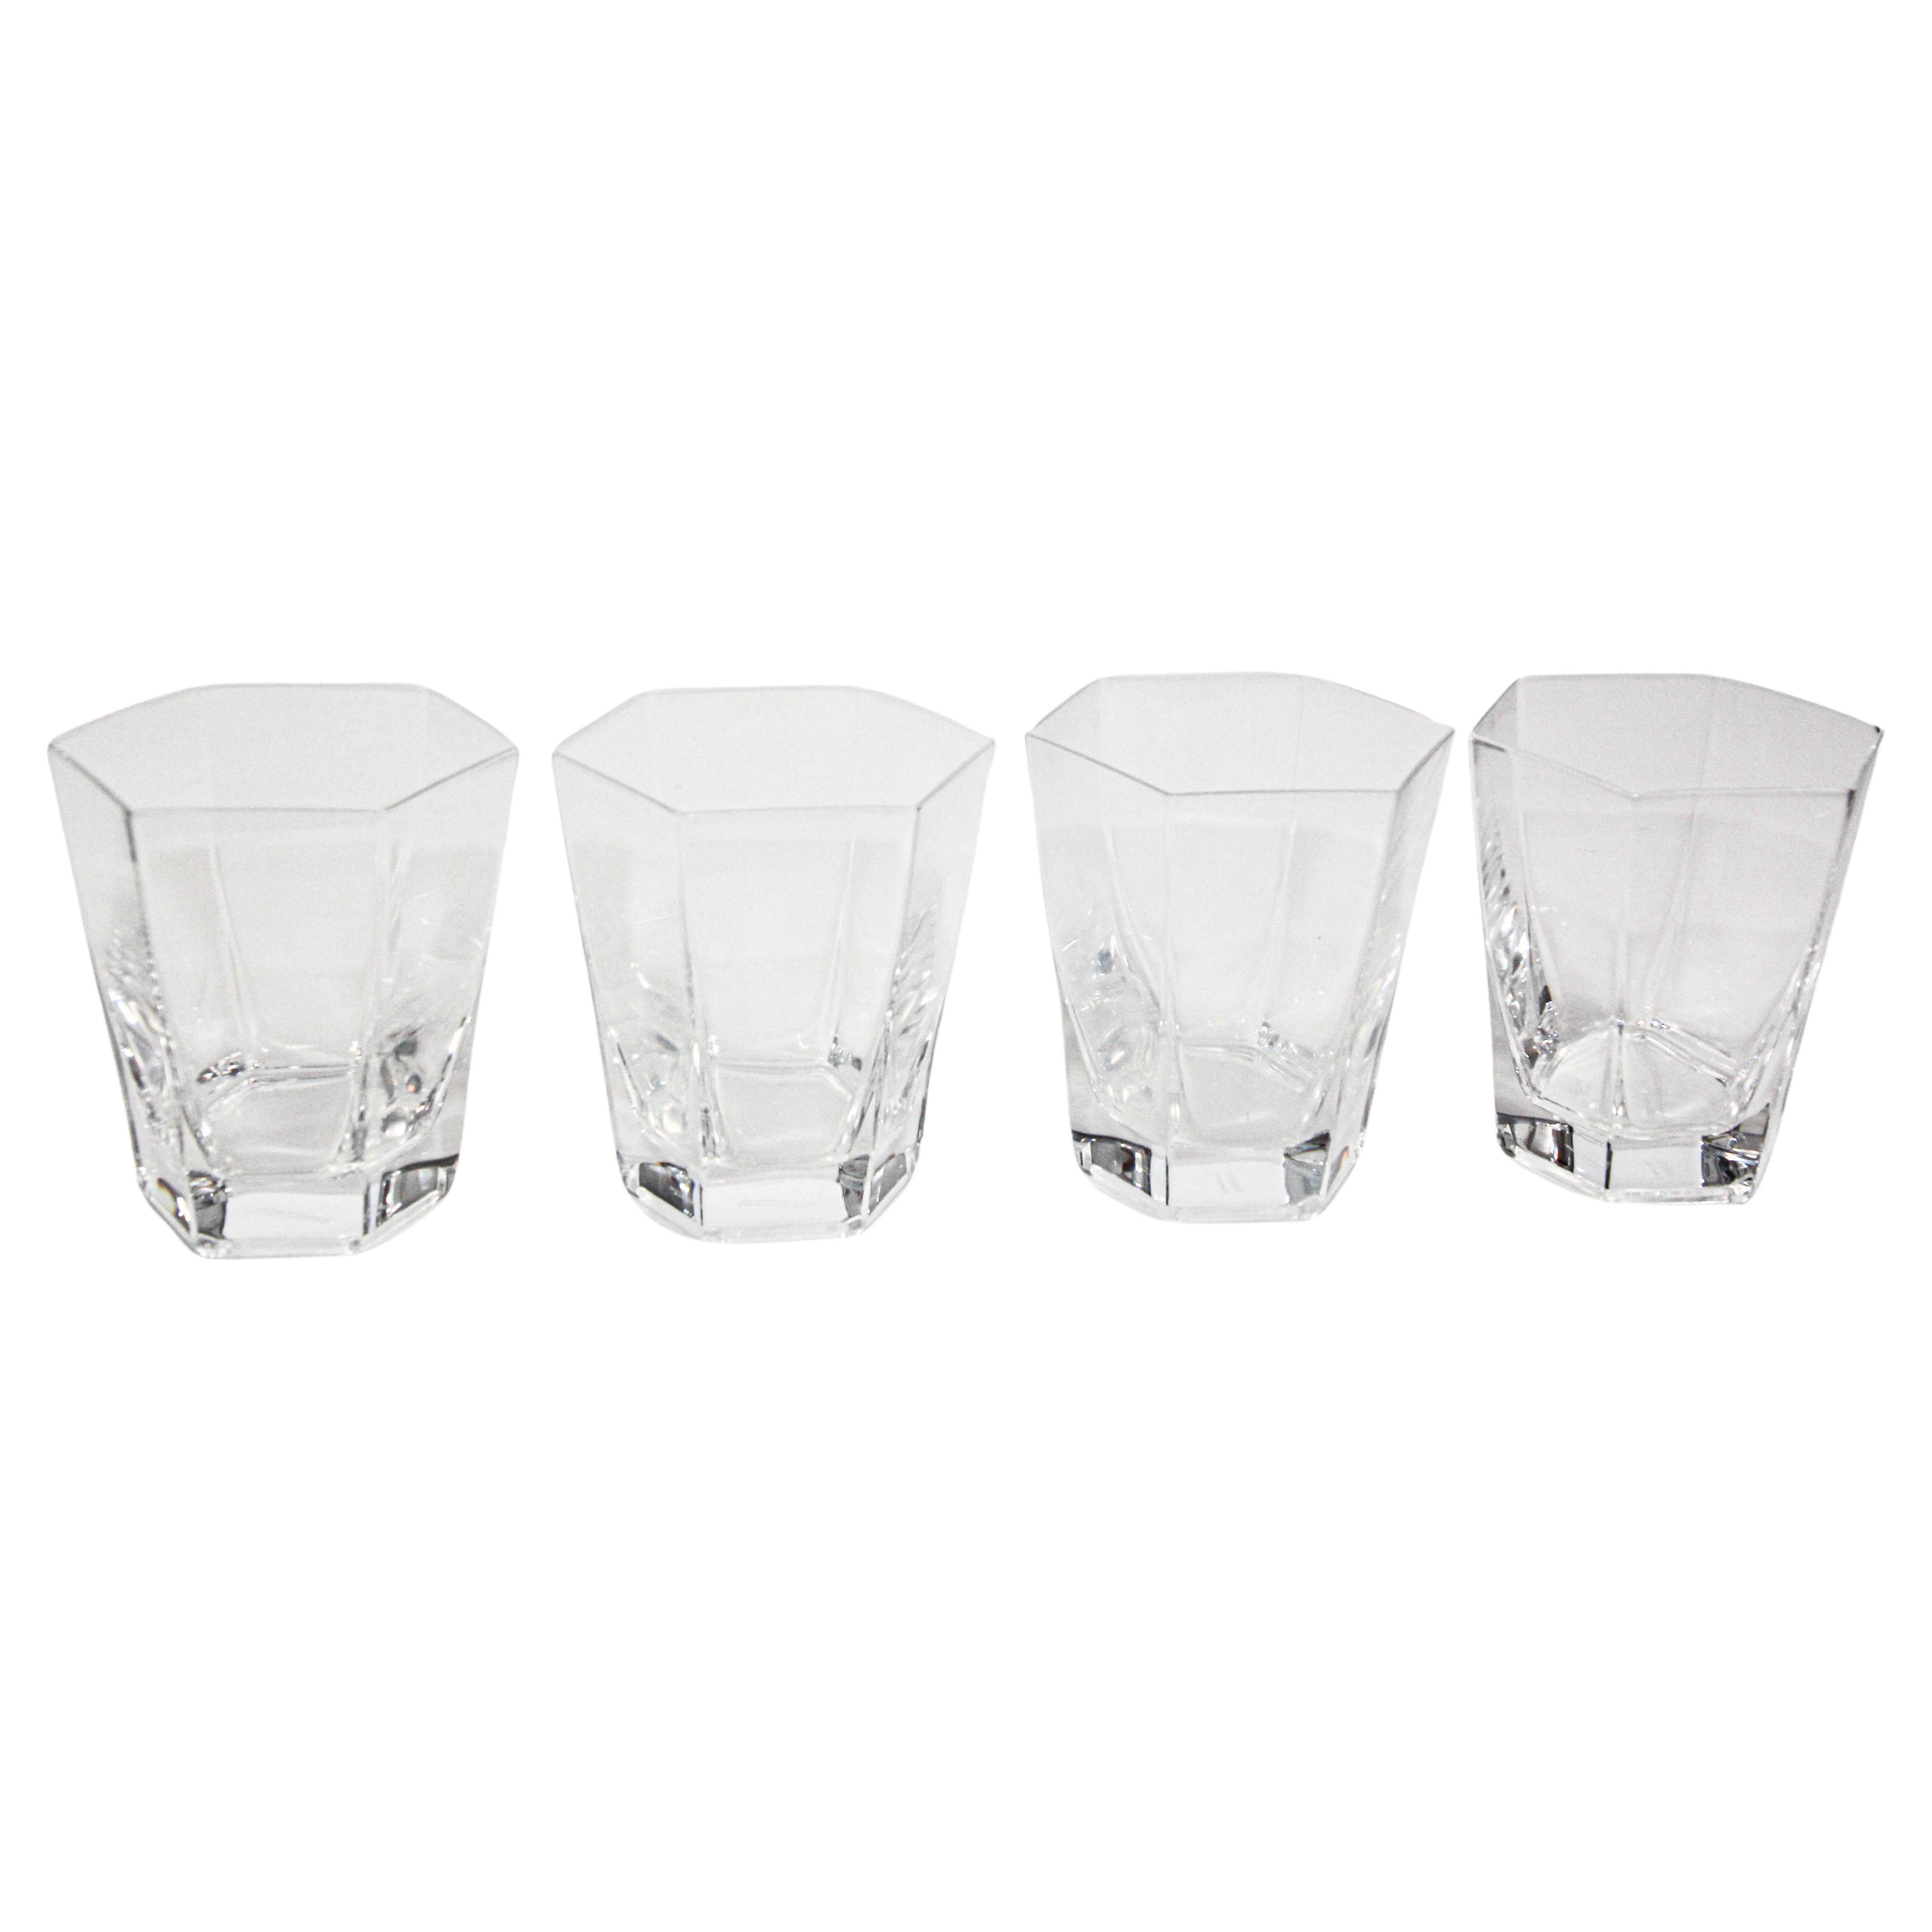 Frank Lloyd Wright par TIFFANY Crystal - Ensemble de 4 verres de bar à la mode ancienne